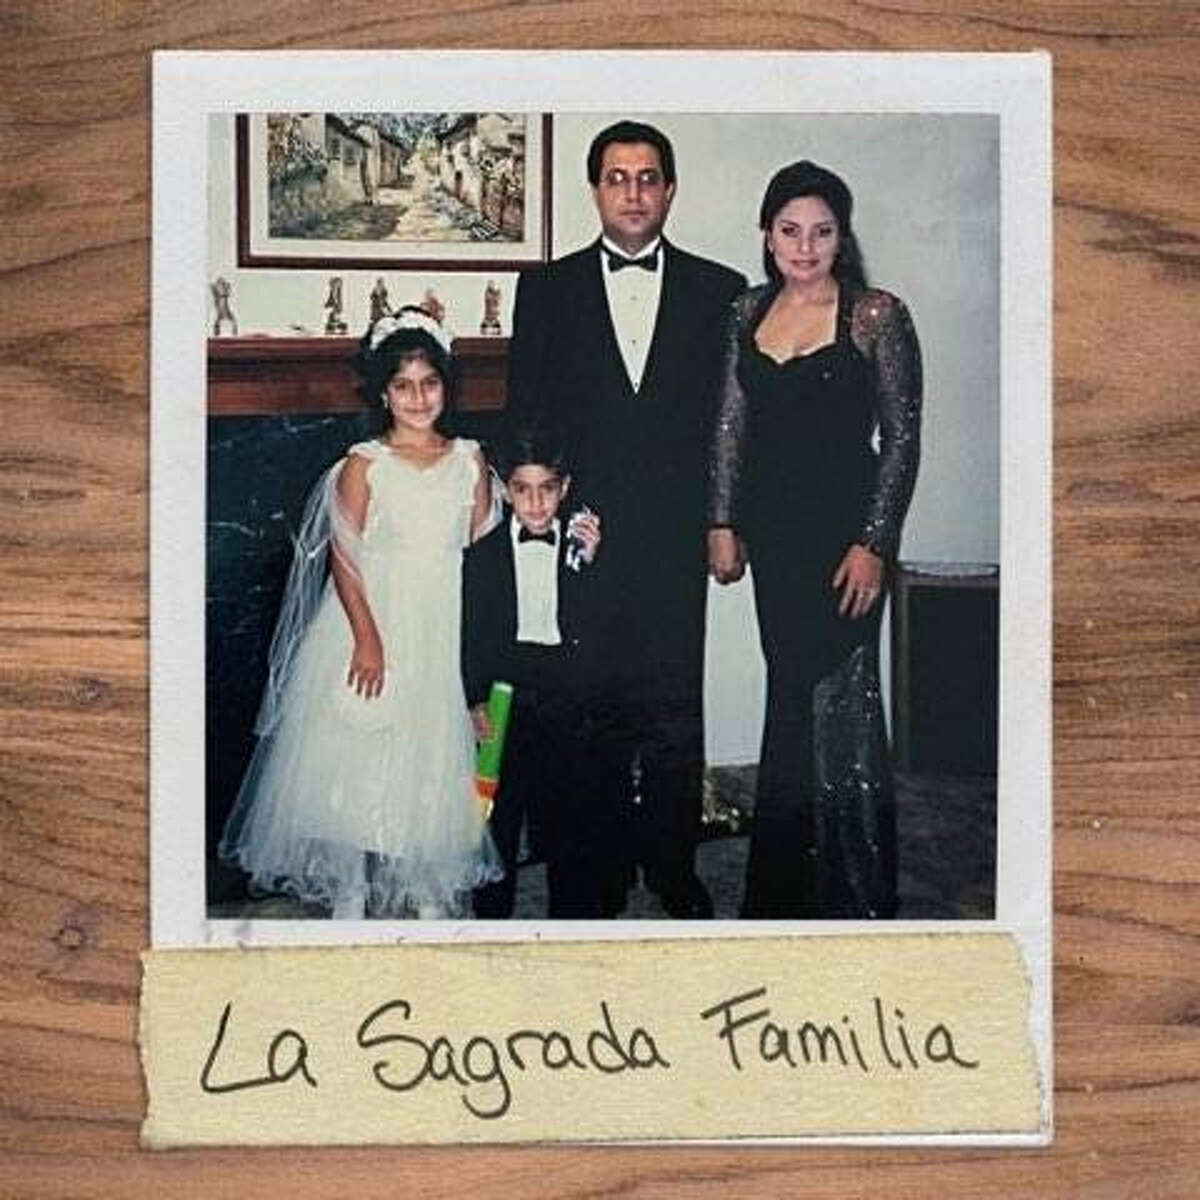 Eman Esfandi is releasing the EP "La Sagrada Familia" on Monday, May 15, 2023.